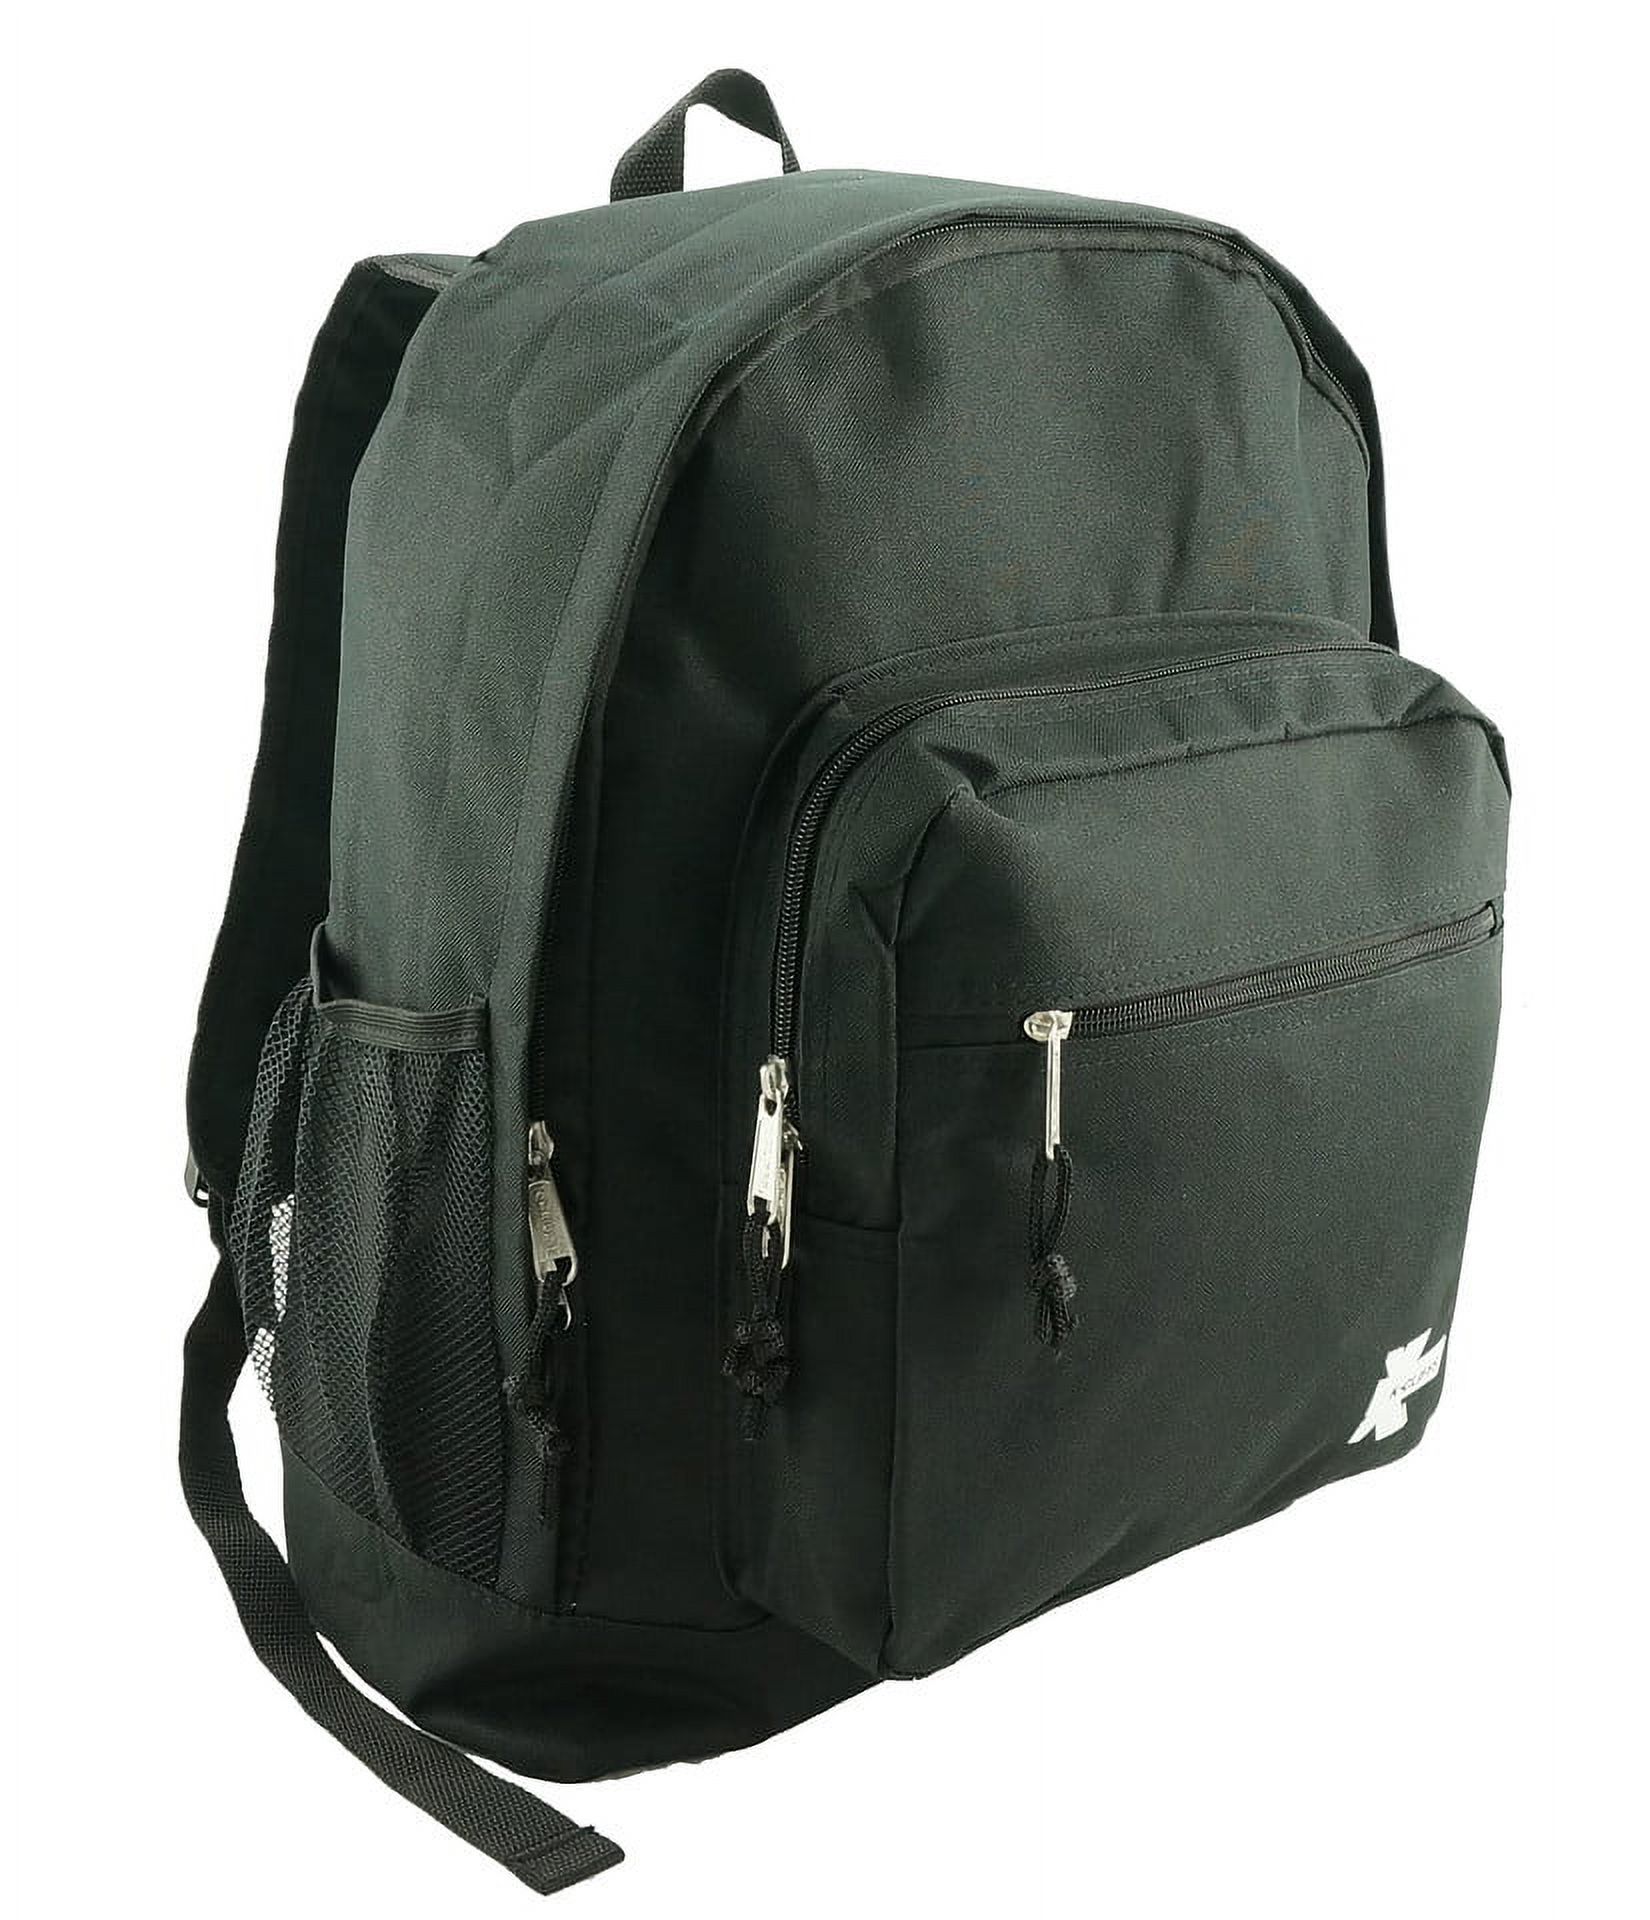 K-Cliffs Large Backpack for Kids-College Students , Lightweight Durable Travel Backpack Fits 15.6 Laptops Water Resistant, Unisex Adjustable Padded Shoulder Straps  (Black) - image 3 of 5